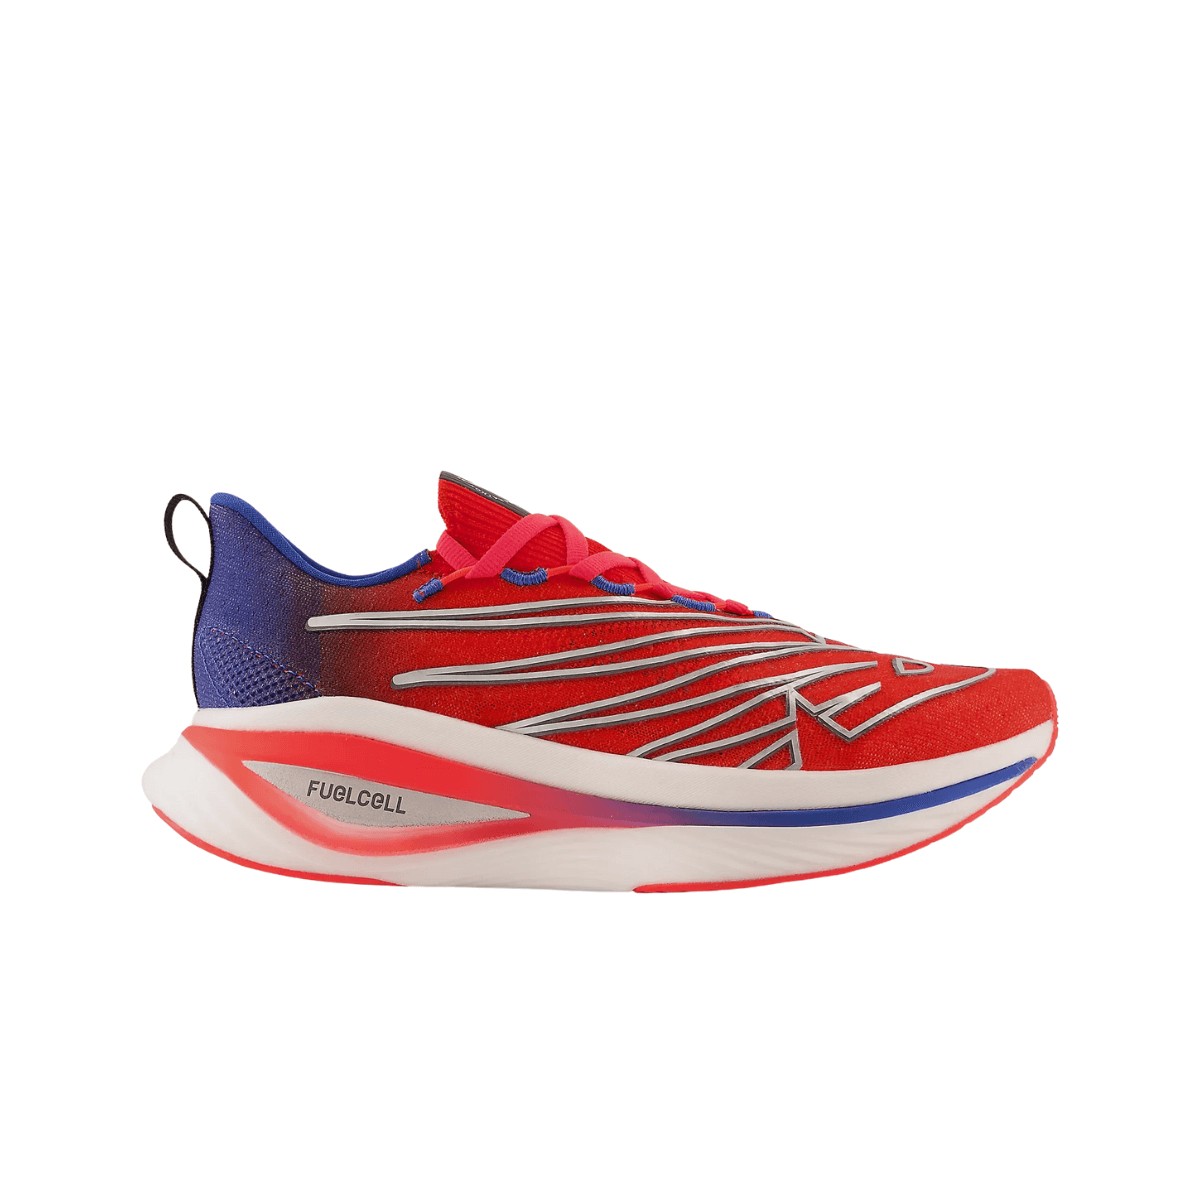 Zapatillas New Balance fuelcell sc elite v3 nyc maratón rojo azul aw22, talla 41,5 - eur